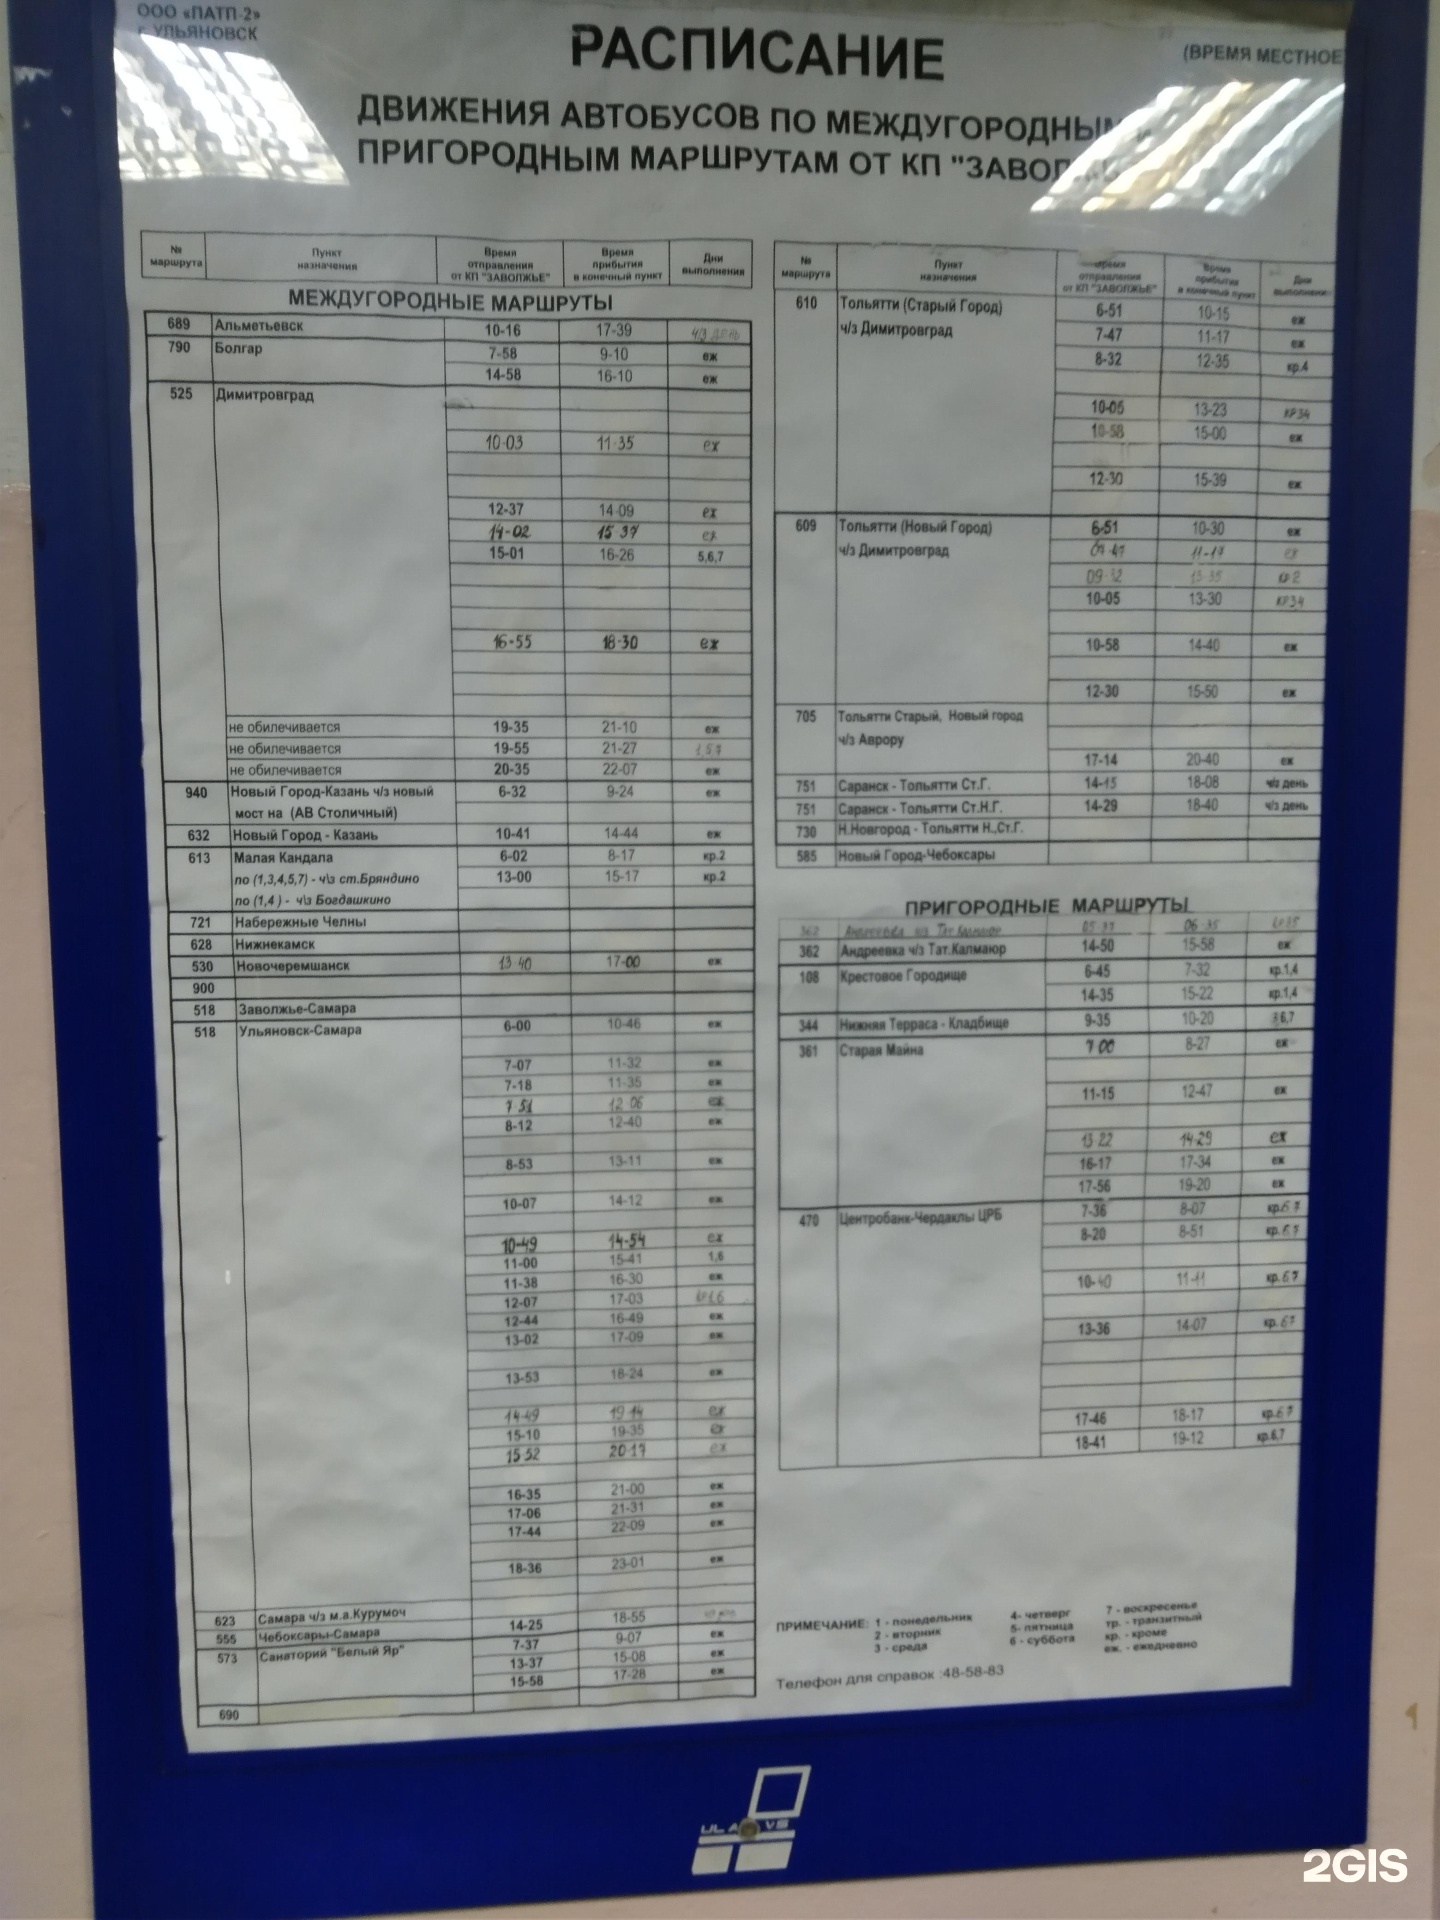 Телефон автостанции верхняя. Расписание автобусов Тольятти Ульяновск. Автостанция верхняя терраса. Ульяновск Тольятти автобус. Автостанция верхняя терраса Ульяновск.